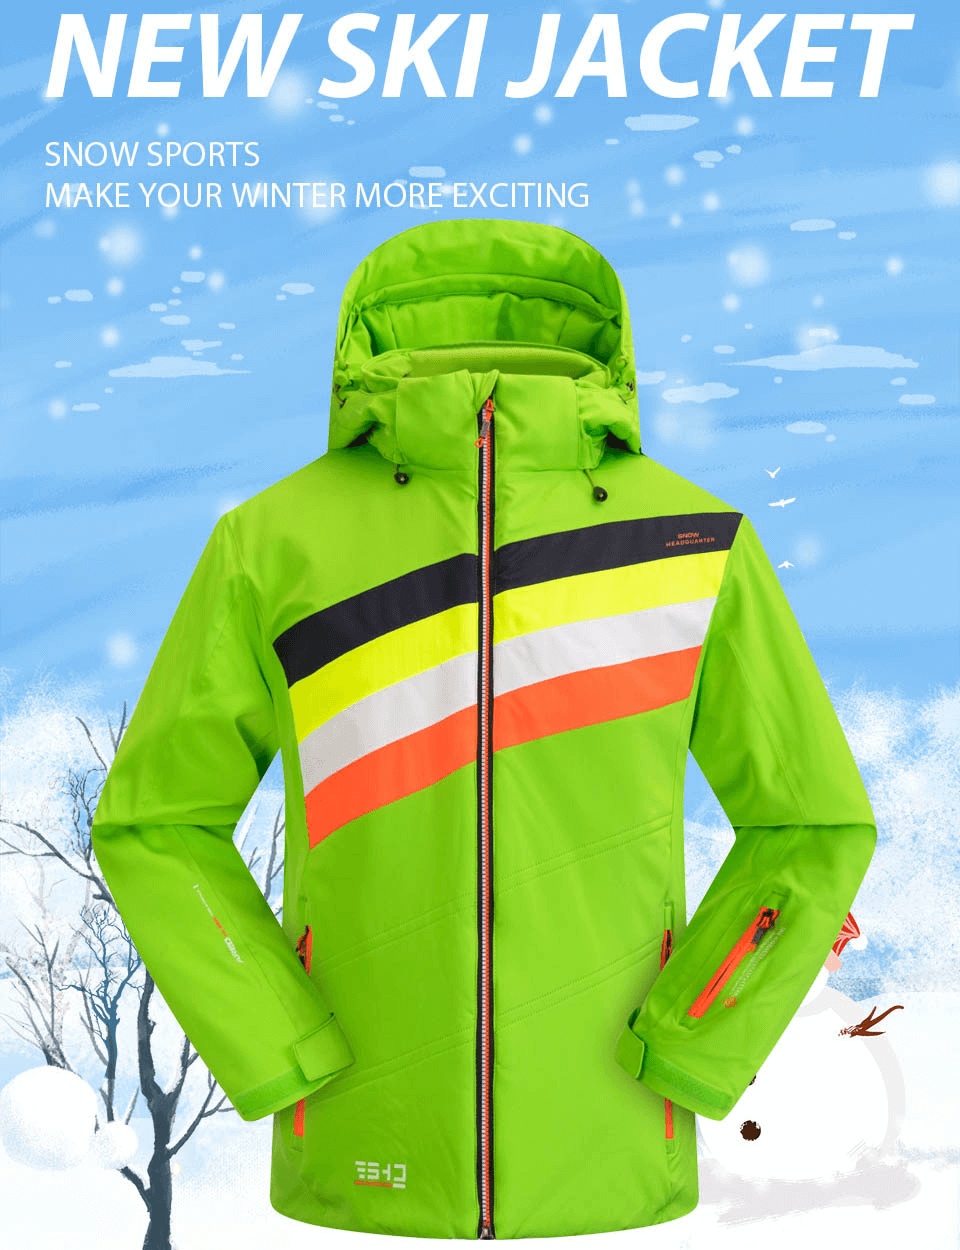 Outdoor-Schneejacke mit warmem Kragen, Reißverschluss und Tasche am Ärmel – SF0880